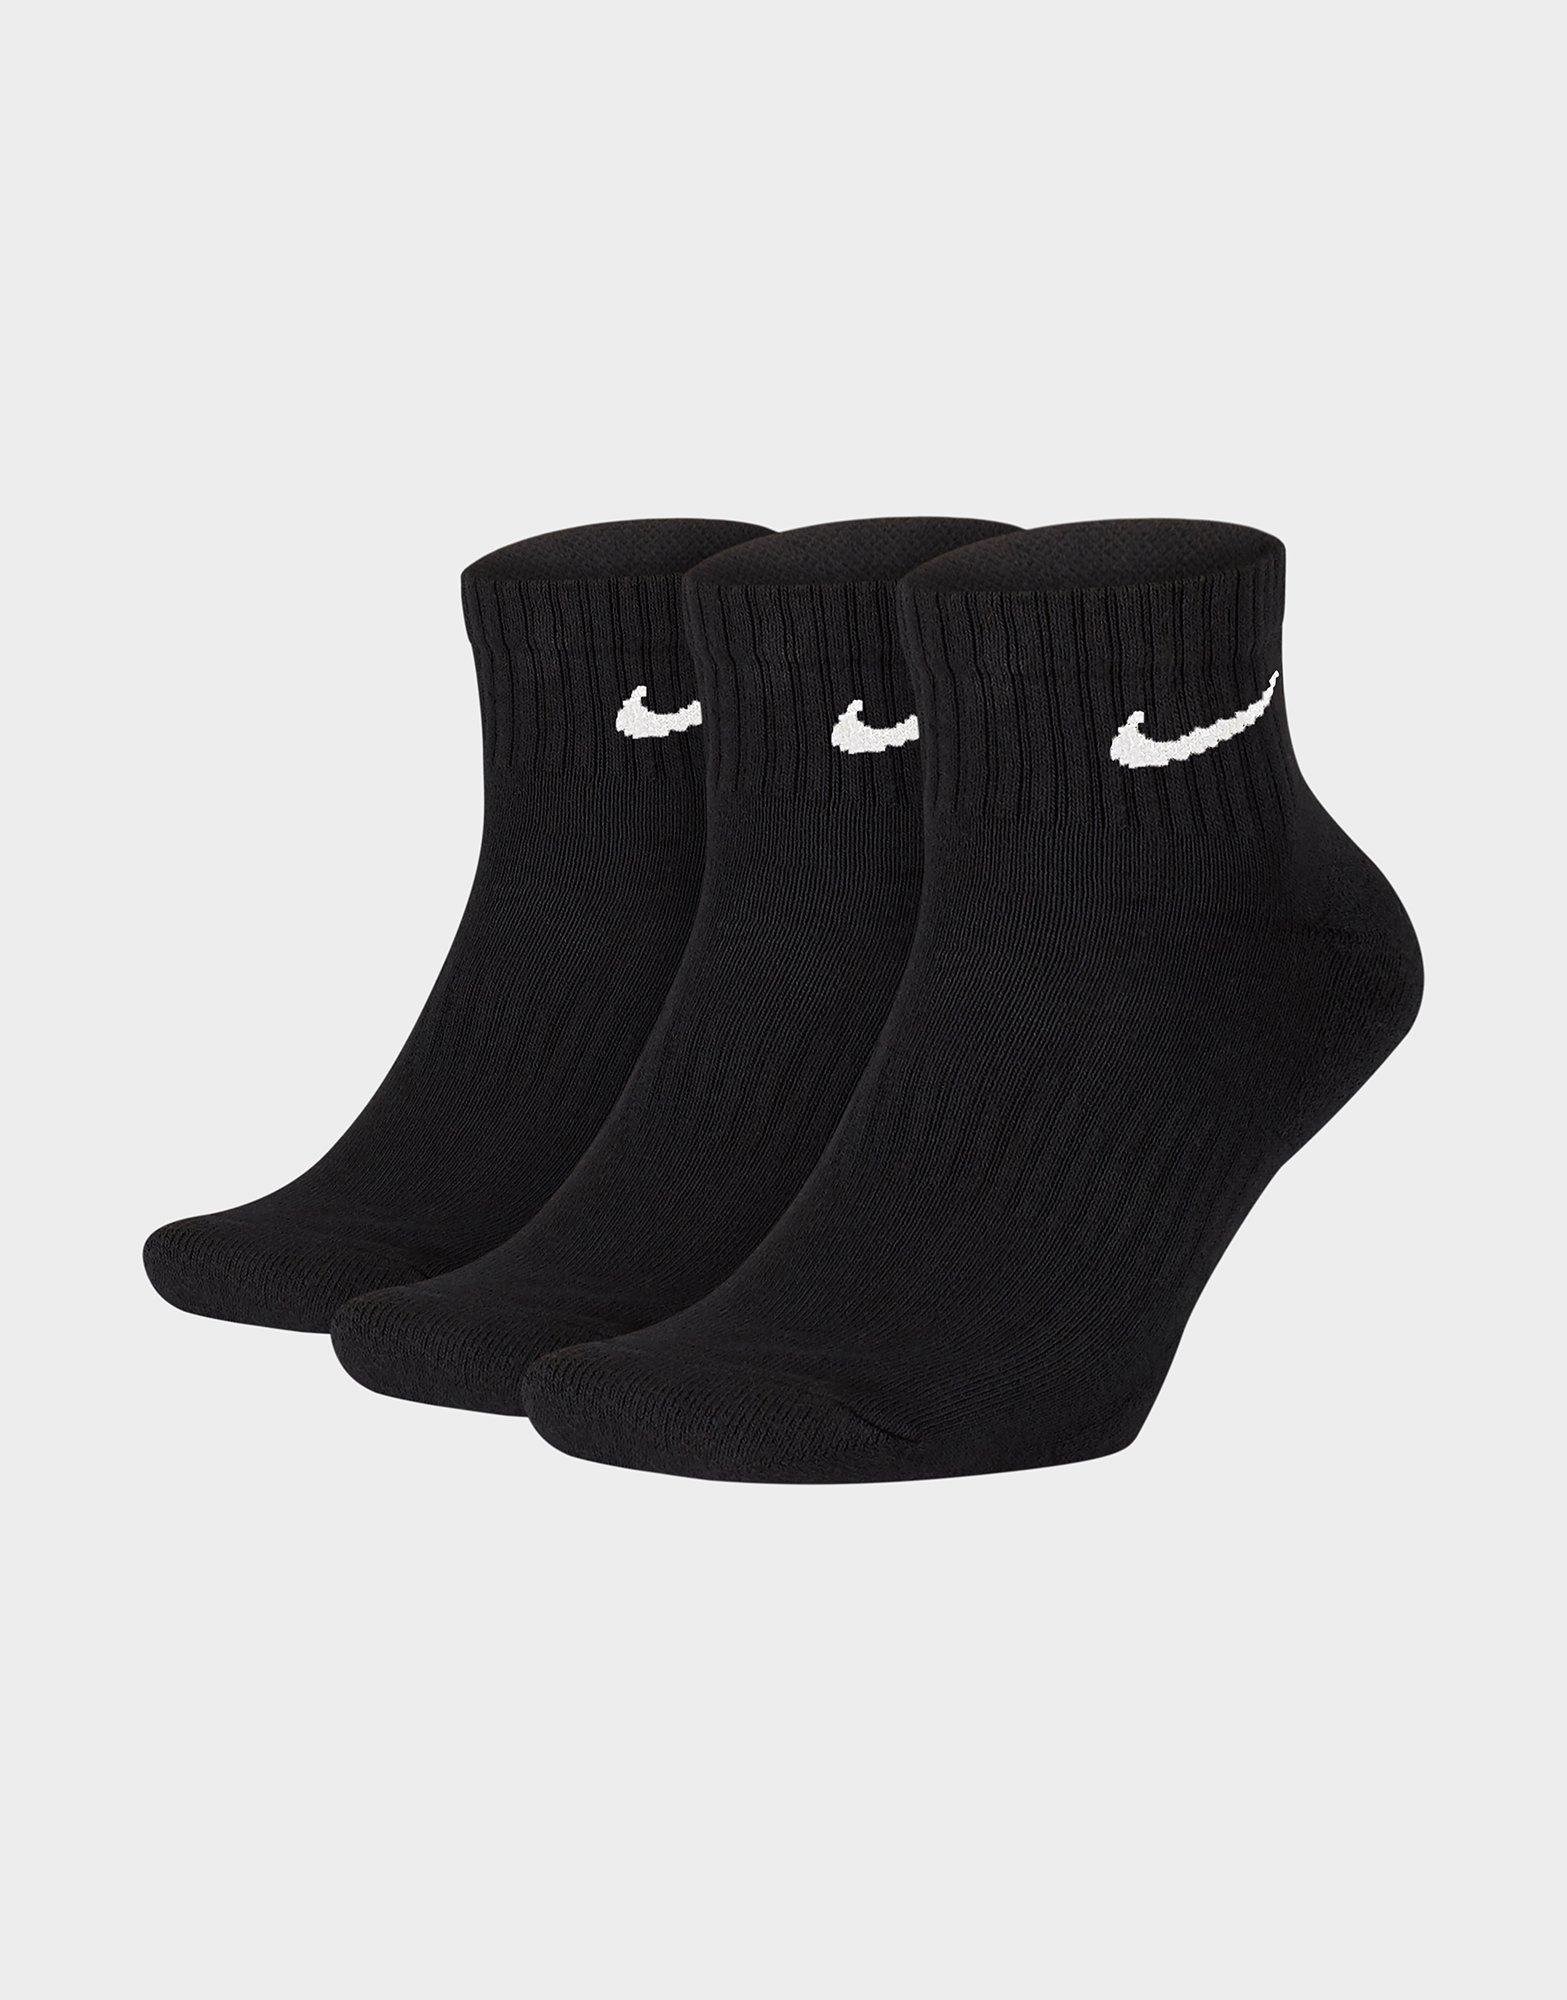 Black Nike Everyday Cushion Ankle Training Socks - JD Sports Singapore